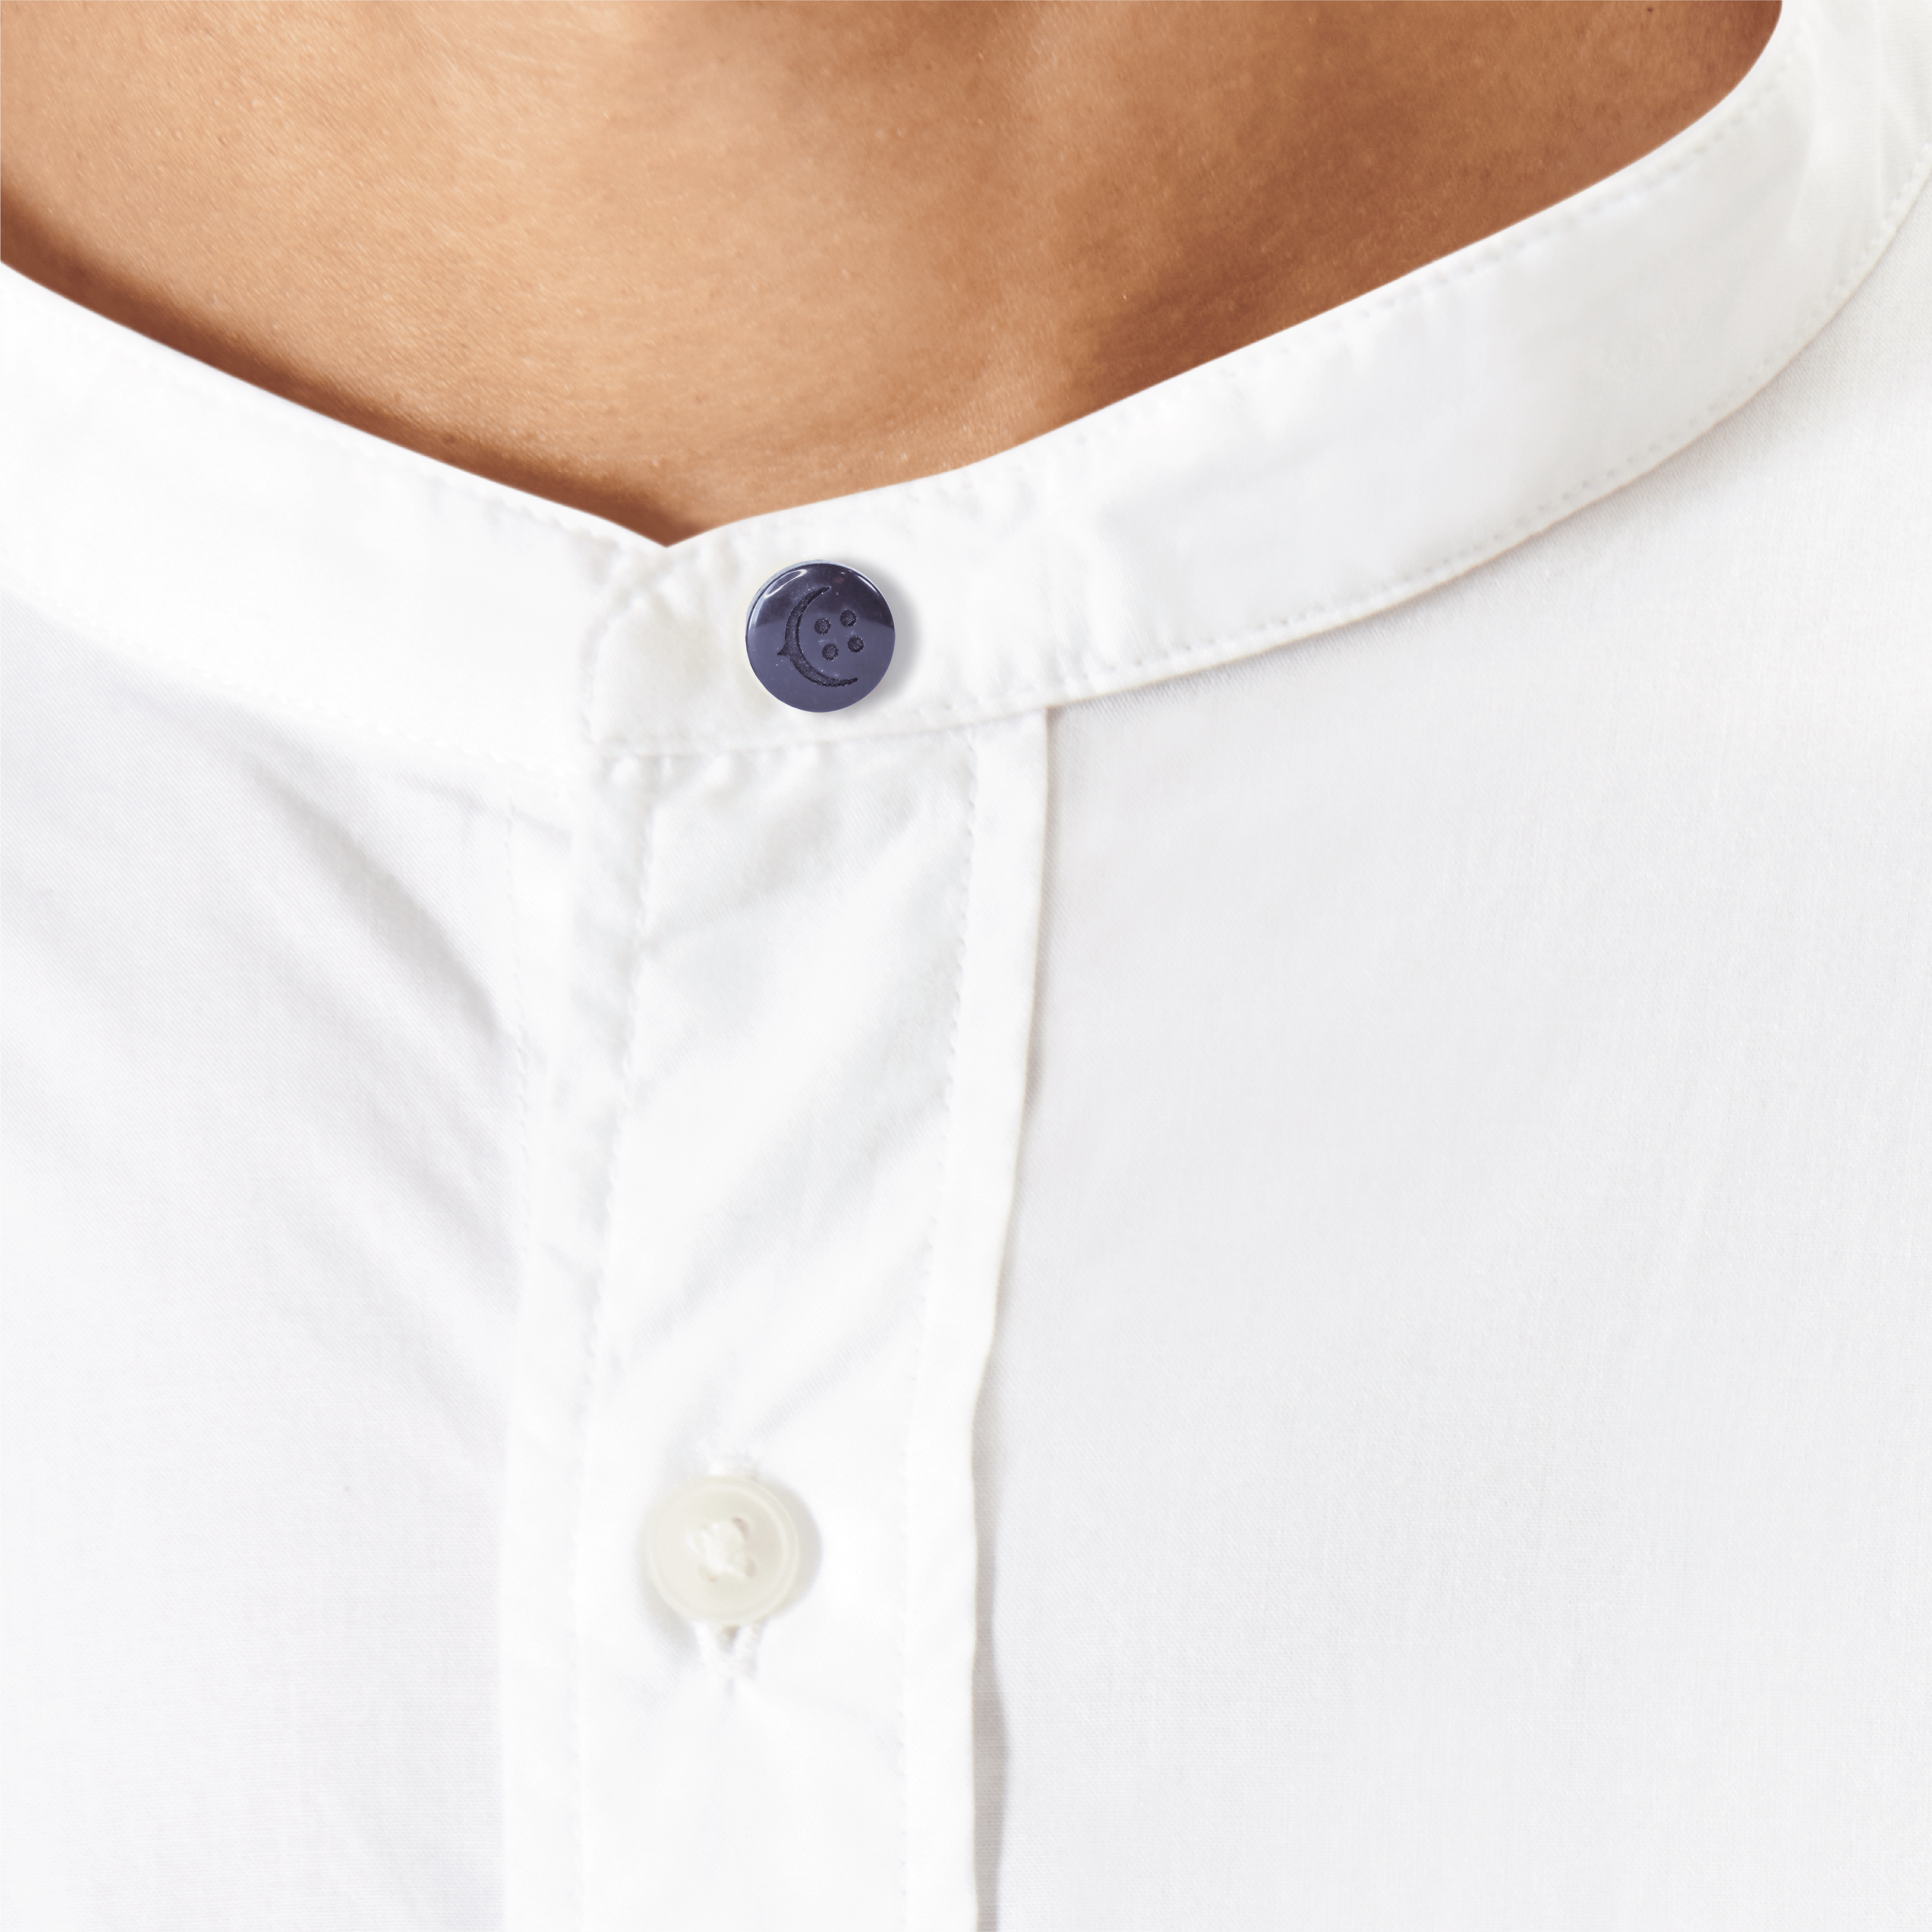  COCHIC - Men and Women's Shirt Collar Extenders